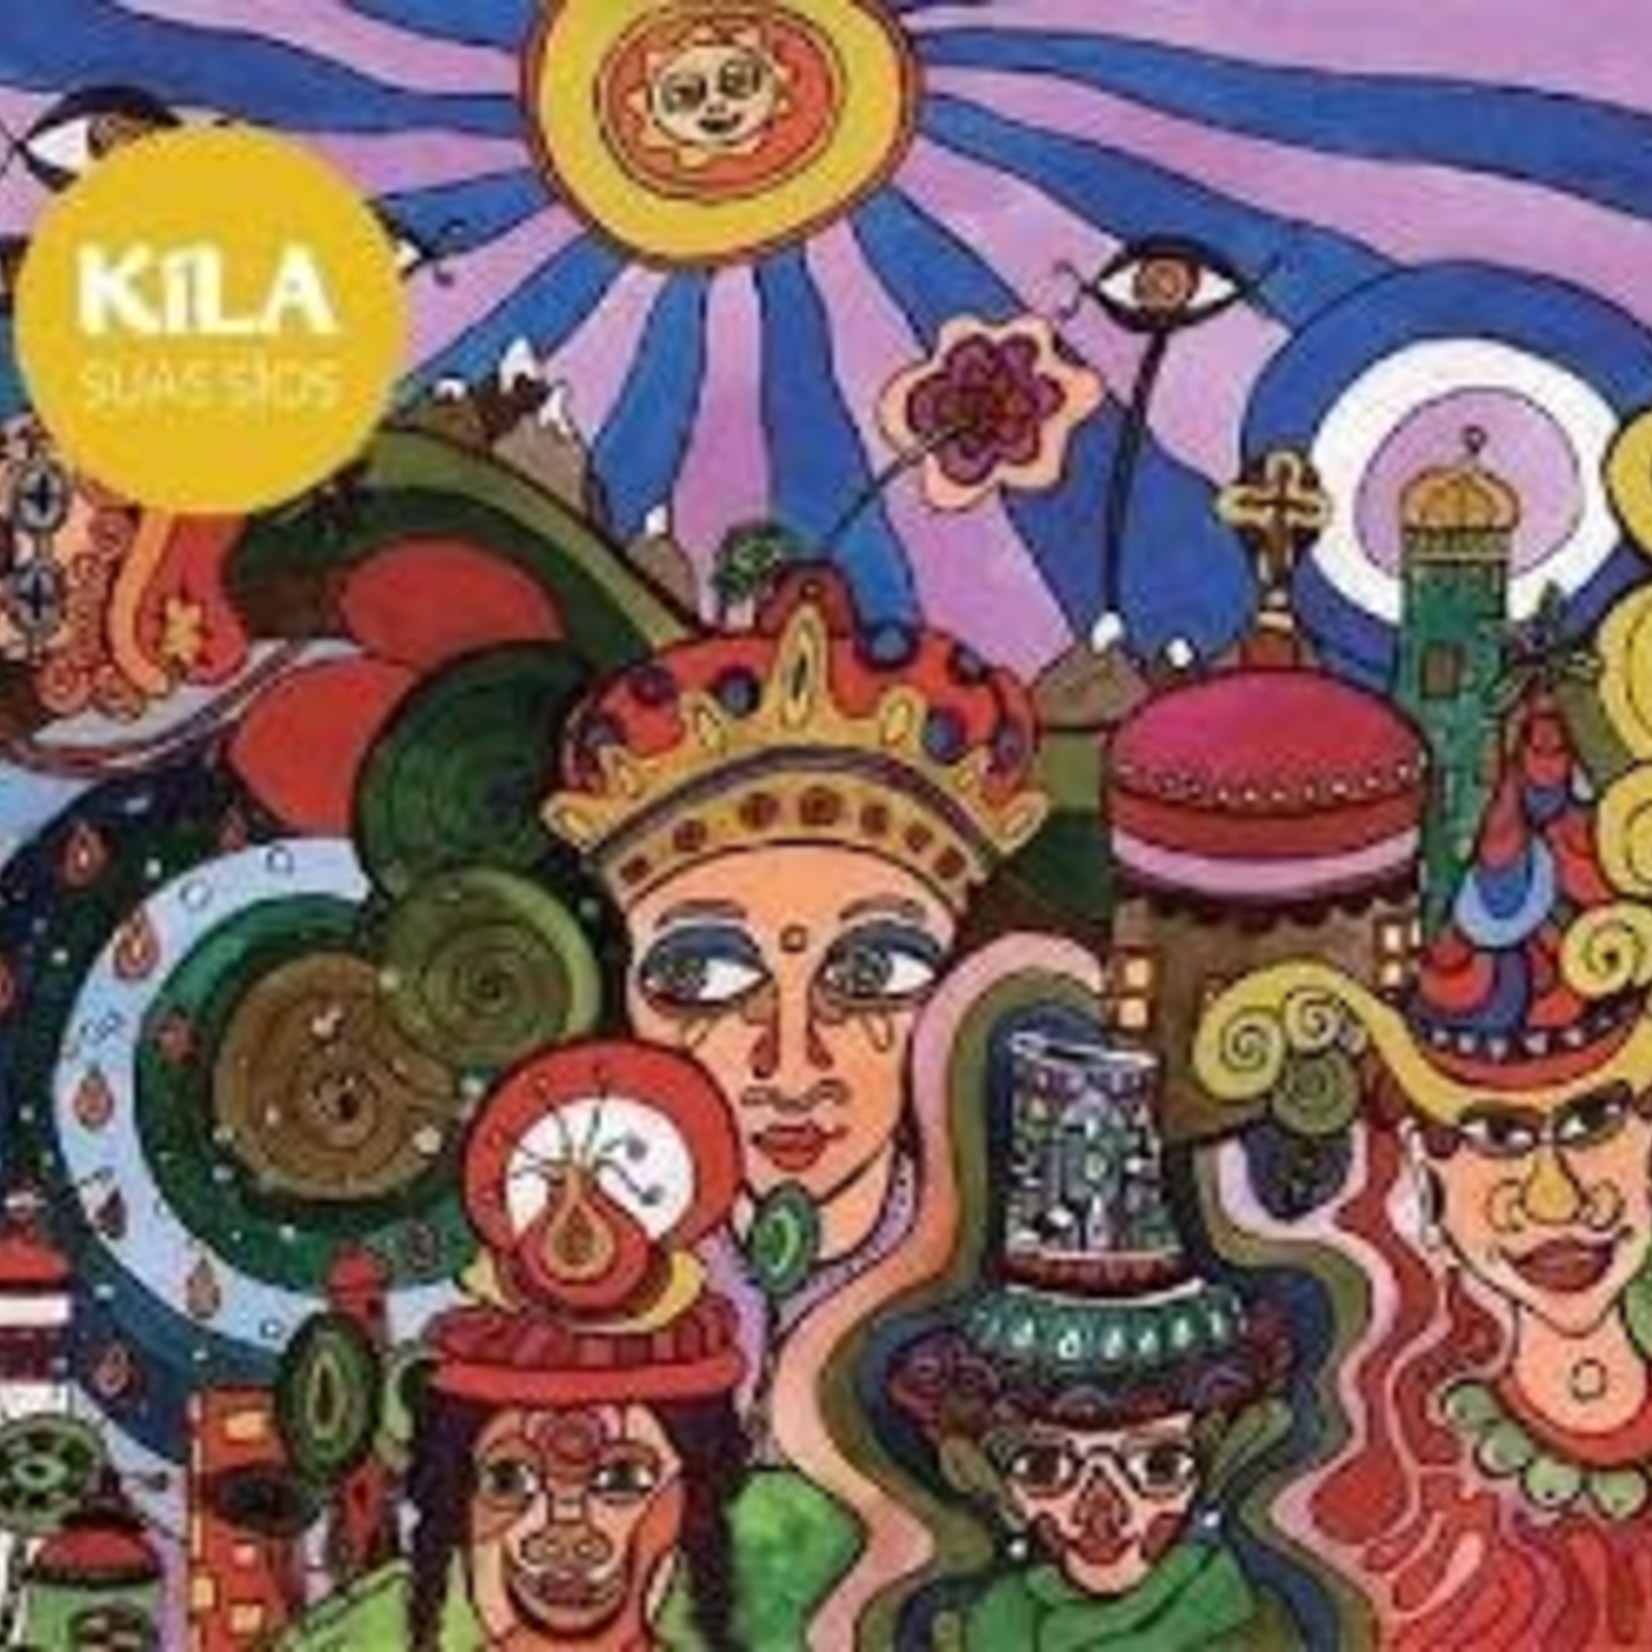 Kila Kila Suas Sios Music CD